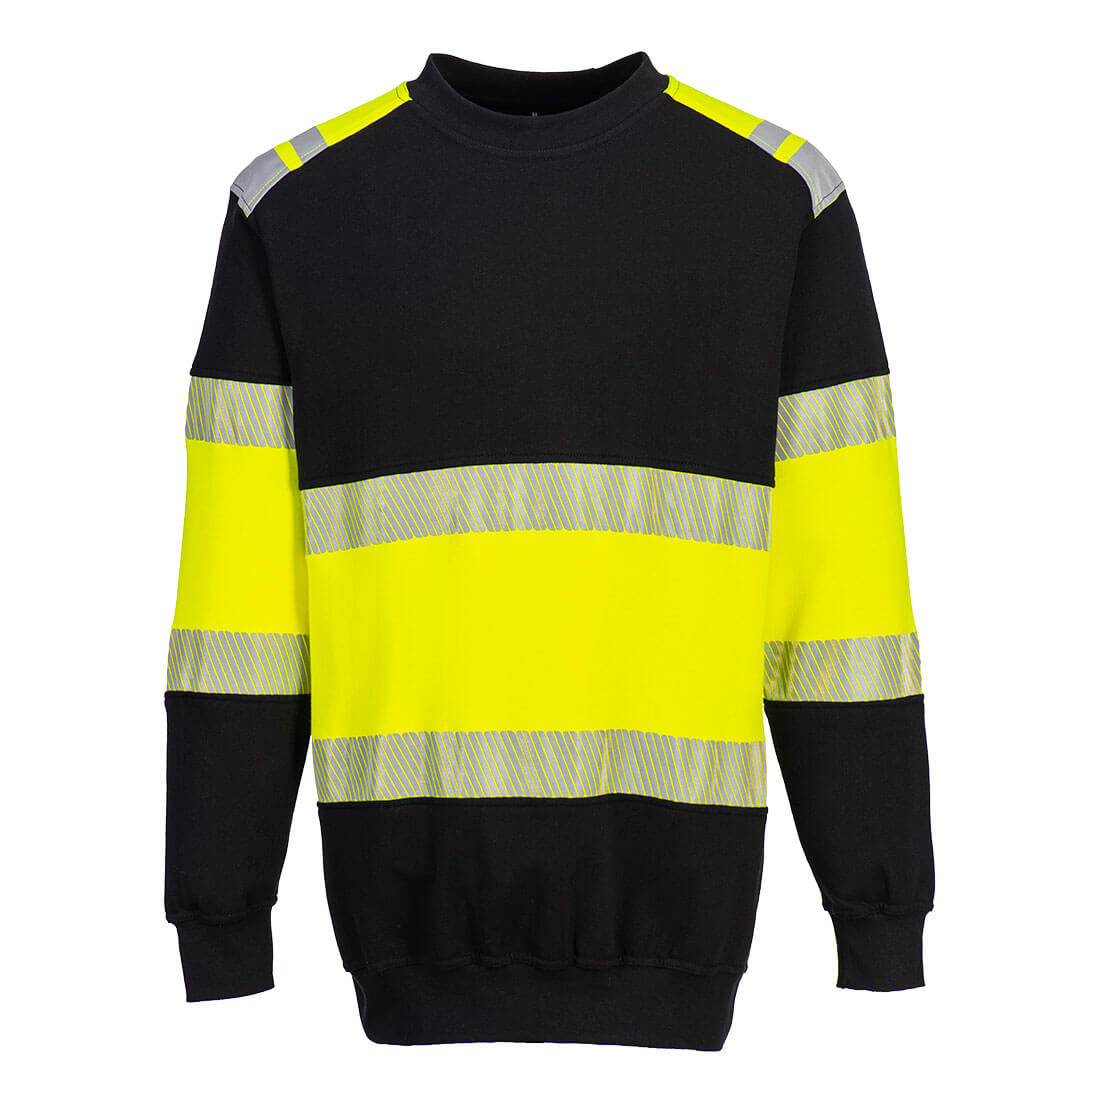 Portwest FR716 - PW3 Flame Resistant Class 1 Sweatshirt